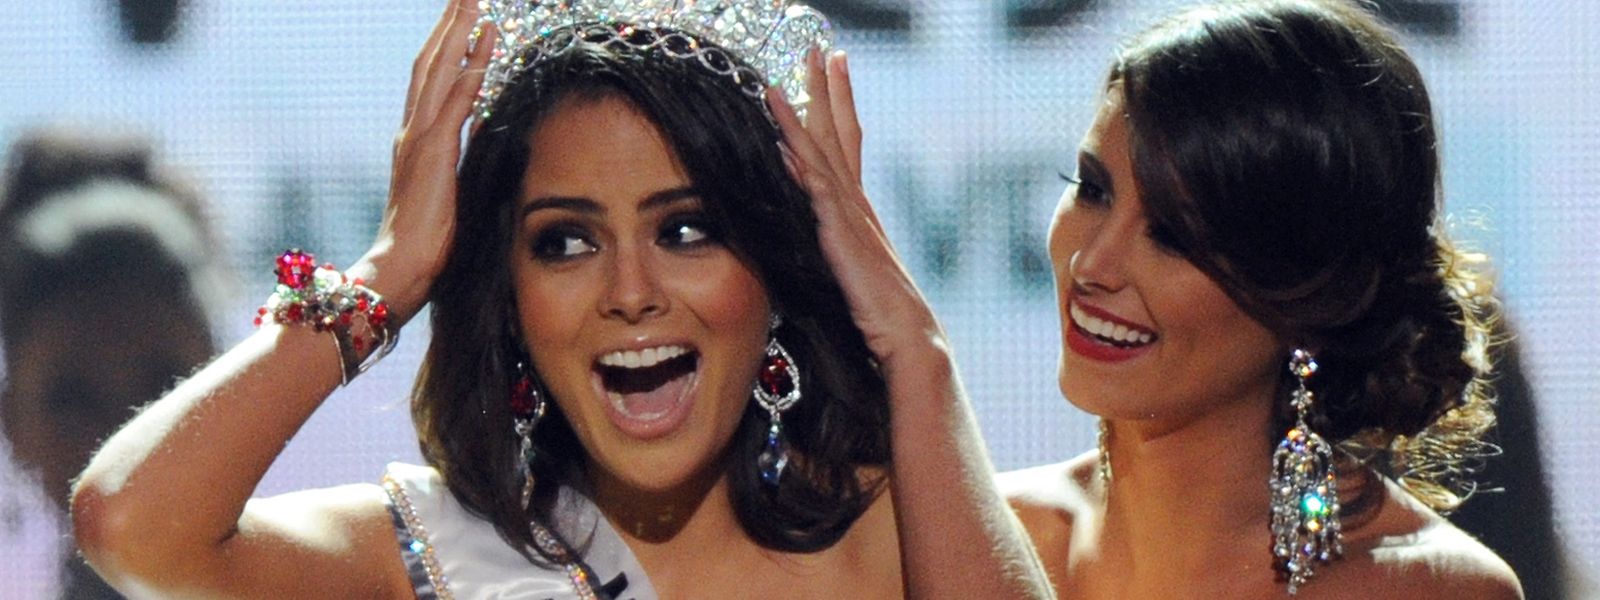 Paulina Vega, amtierende Miss-Universe will ihren Titel nicht abgeben, erklärt sich aber mit der Latino-Gemeinde in den USA solidarisch.